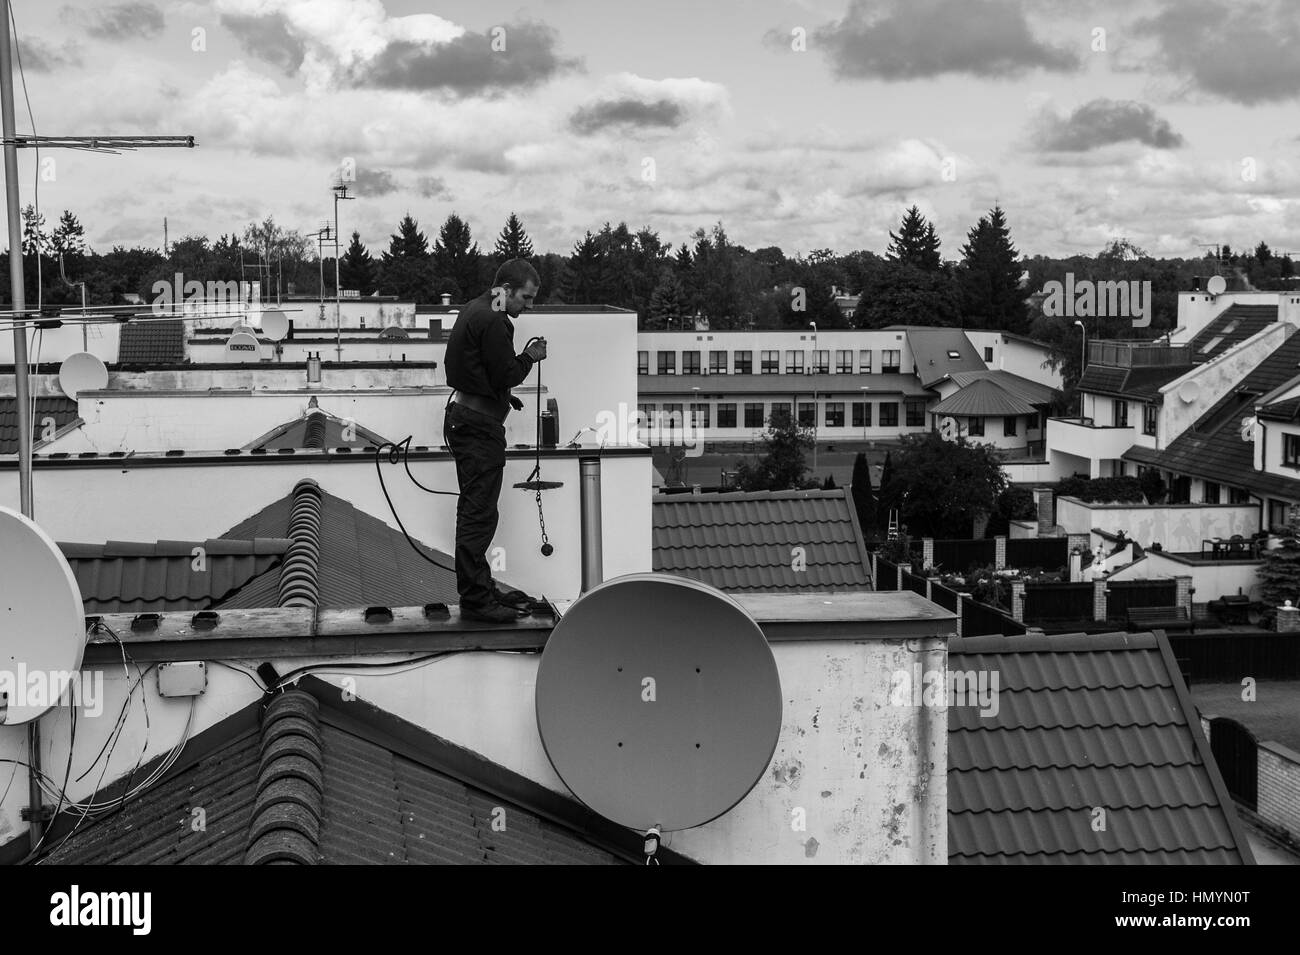 Jürmo (27) travaille sur un toit à Pirita, Tallinn, Estonie, 20 septembre 2016. Banque D'Images